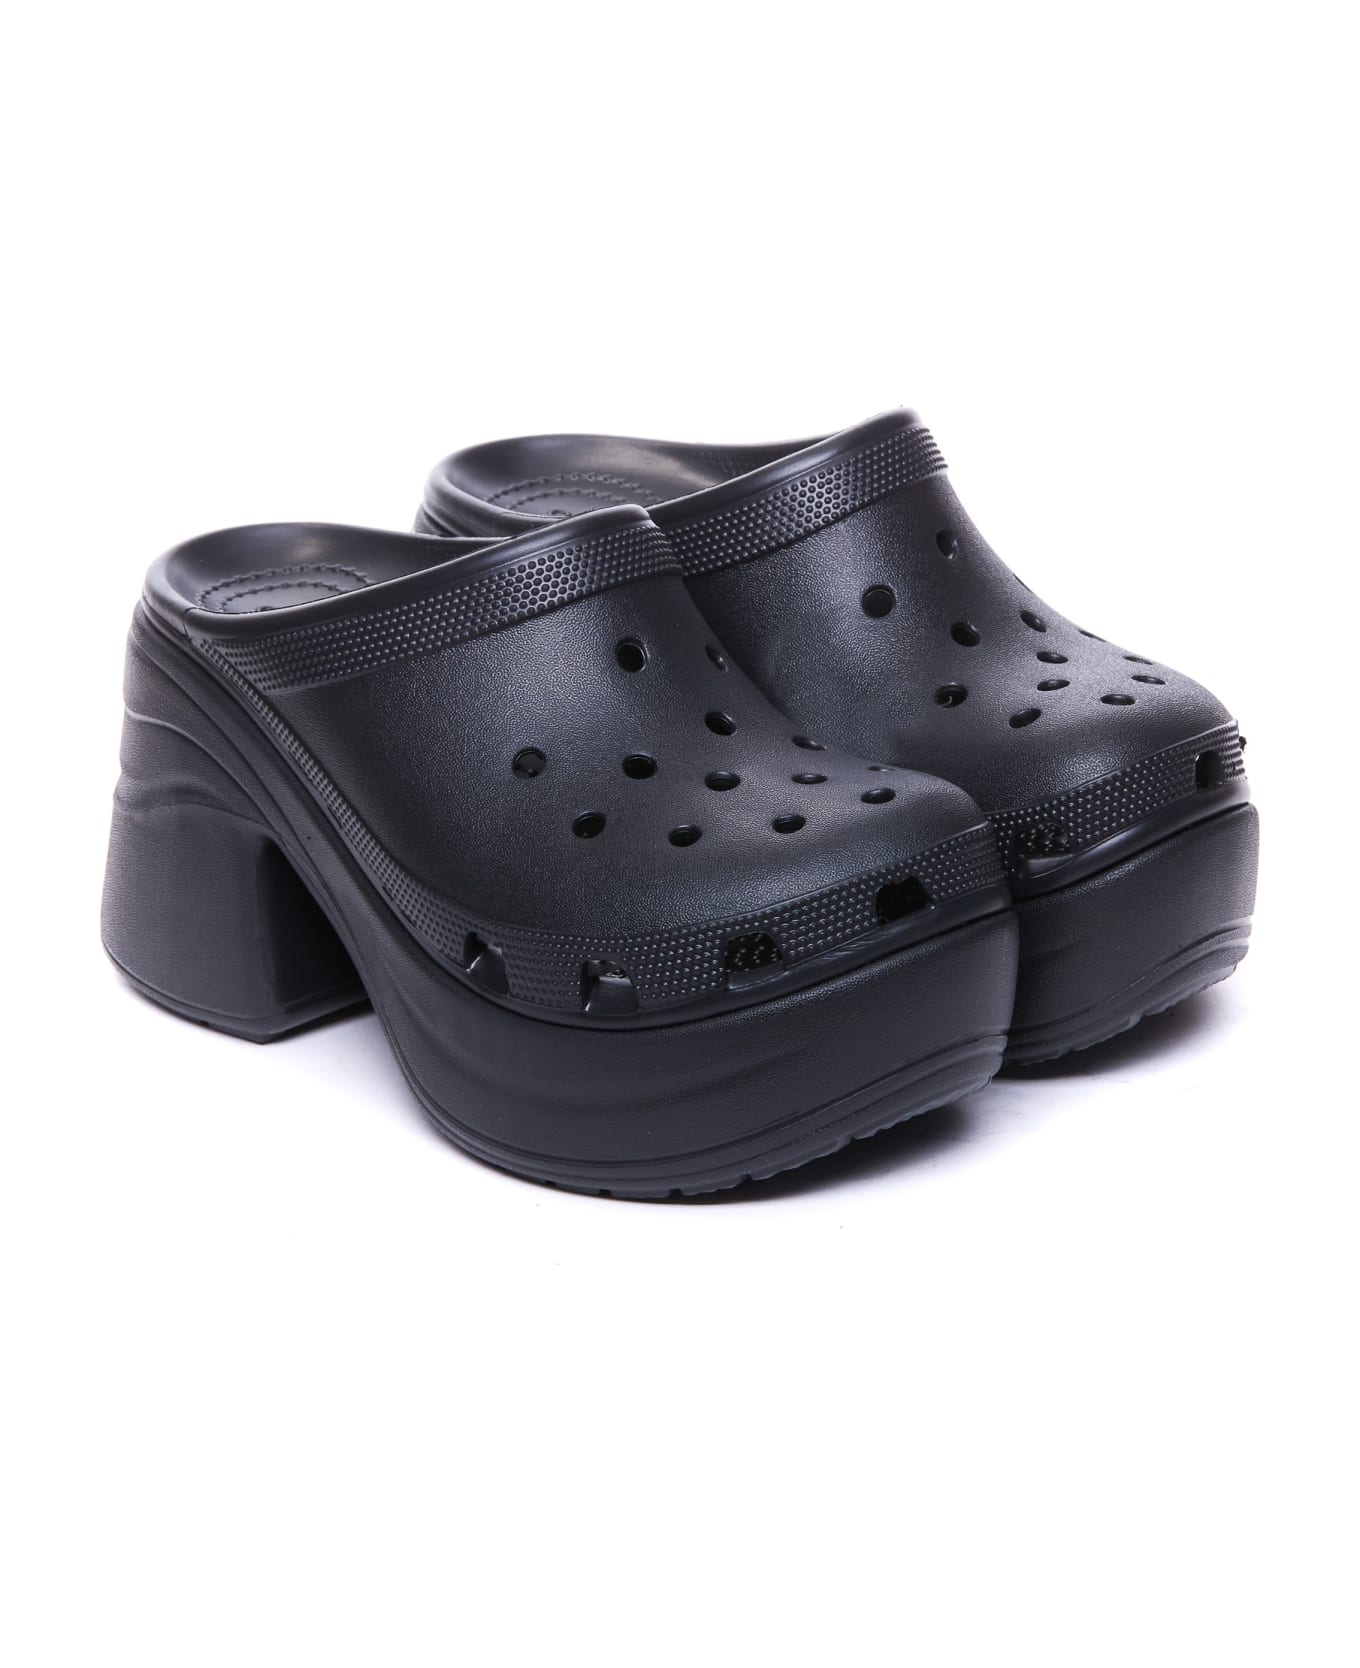 Crocs Siren Clog - Black